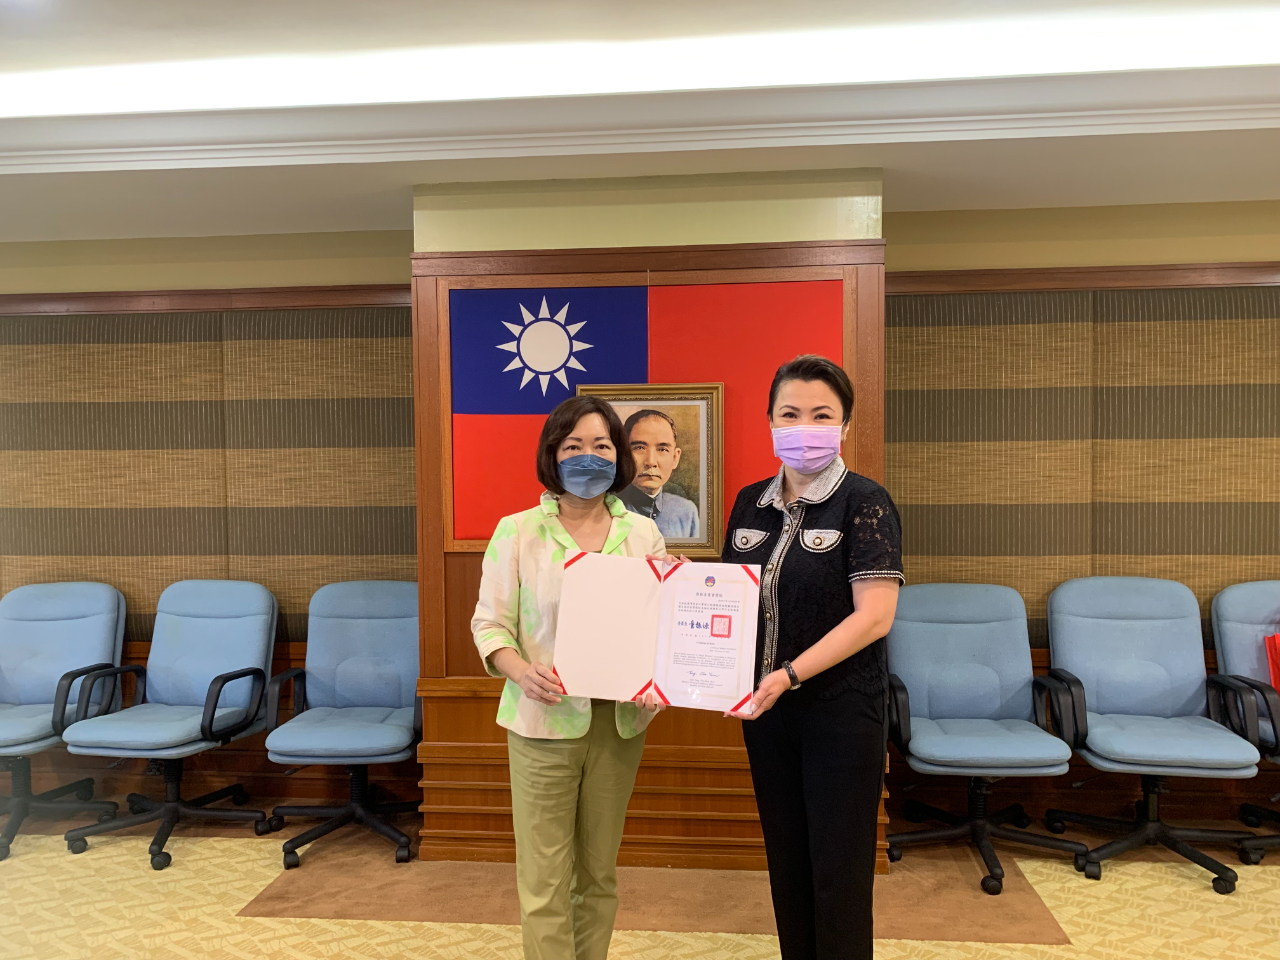 洪大使慧珠頒贈吉隆坡臺灣商會僑委會感謝狀。